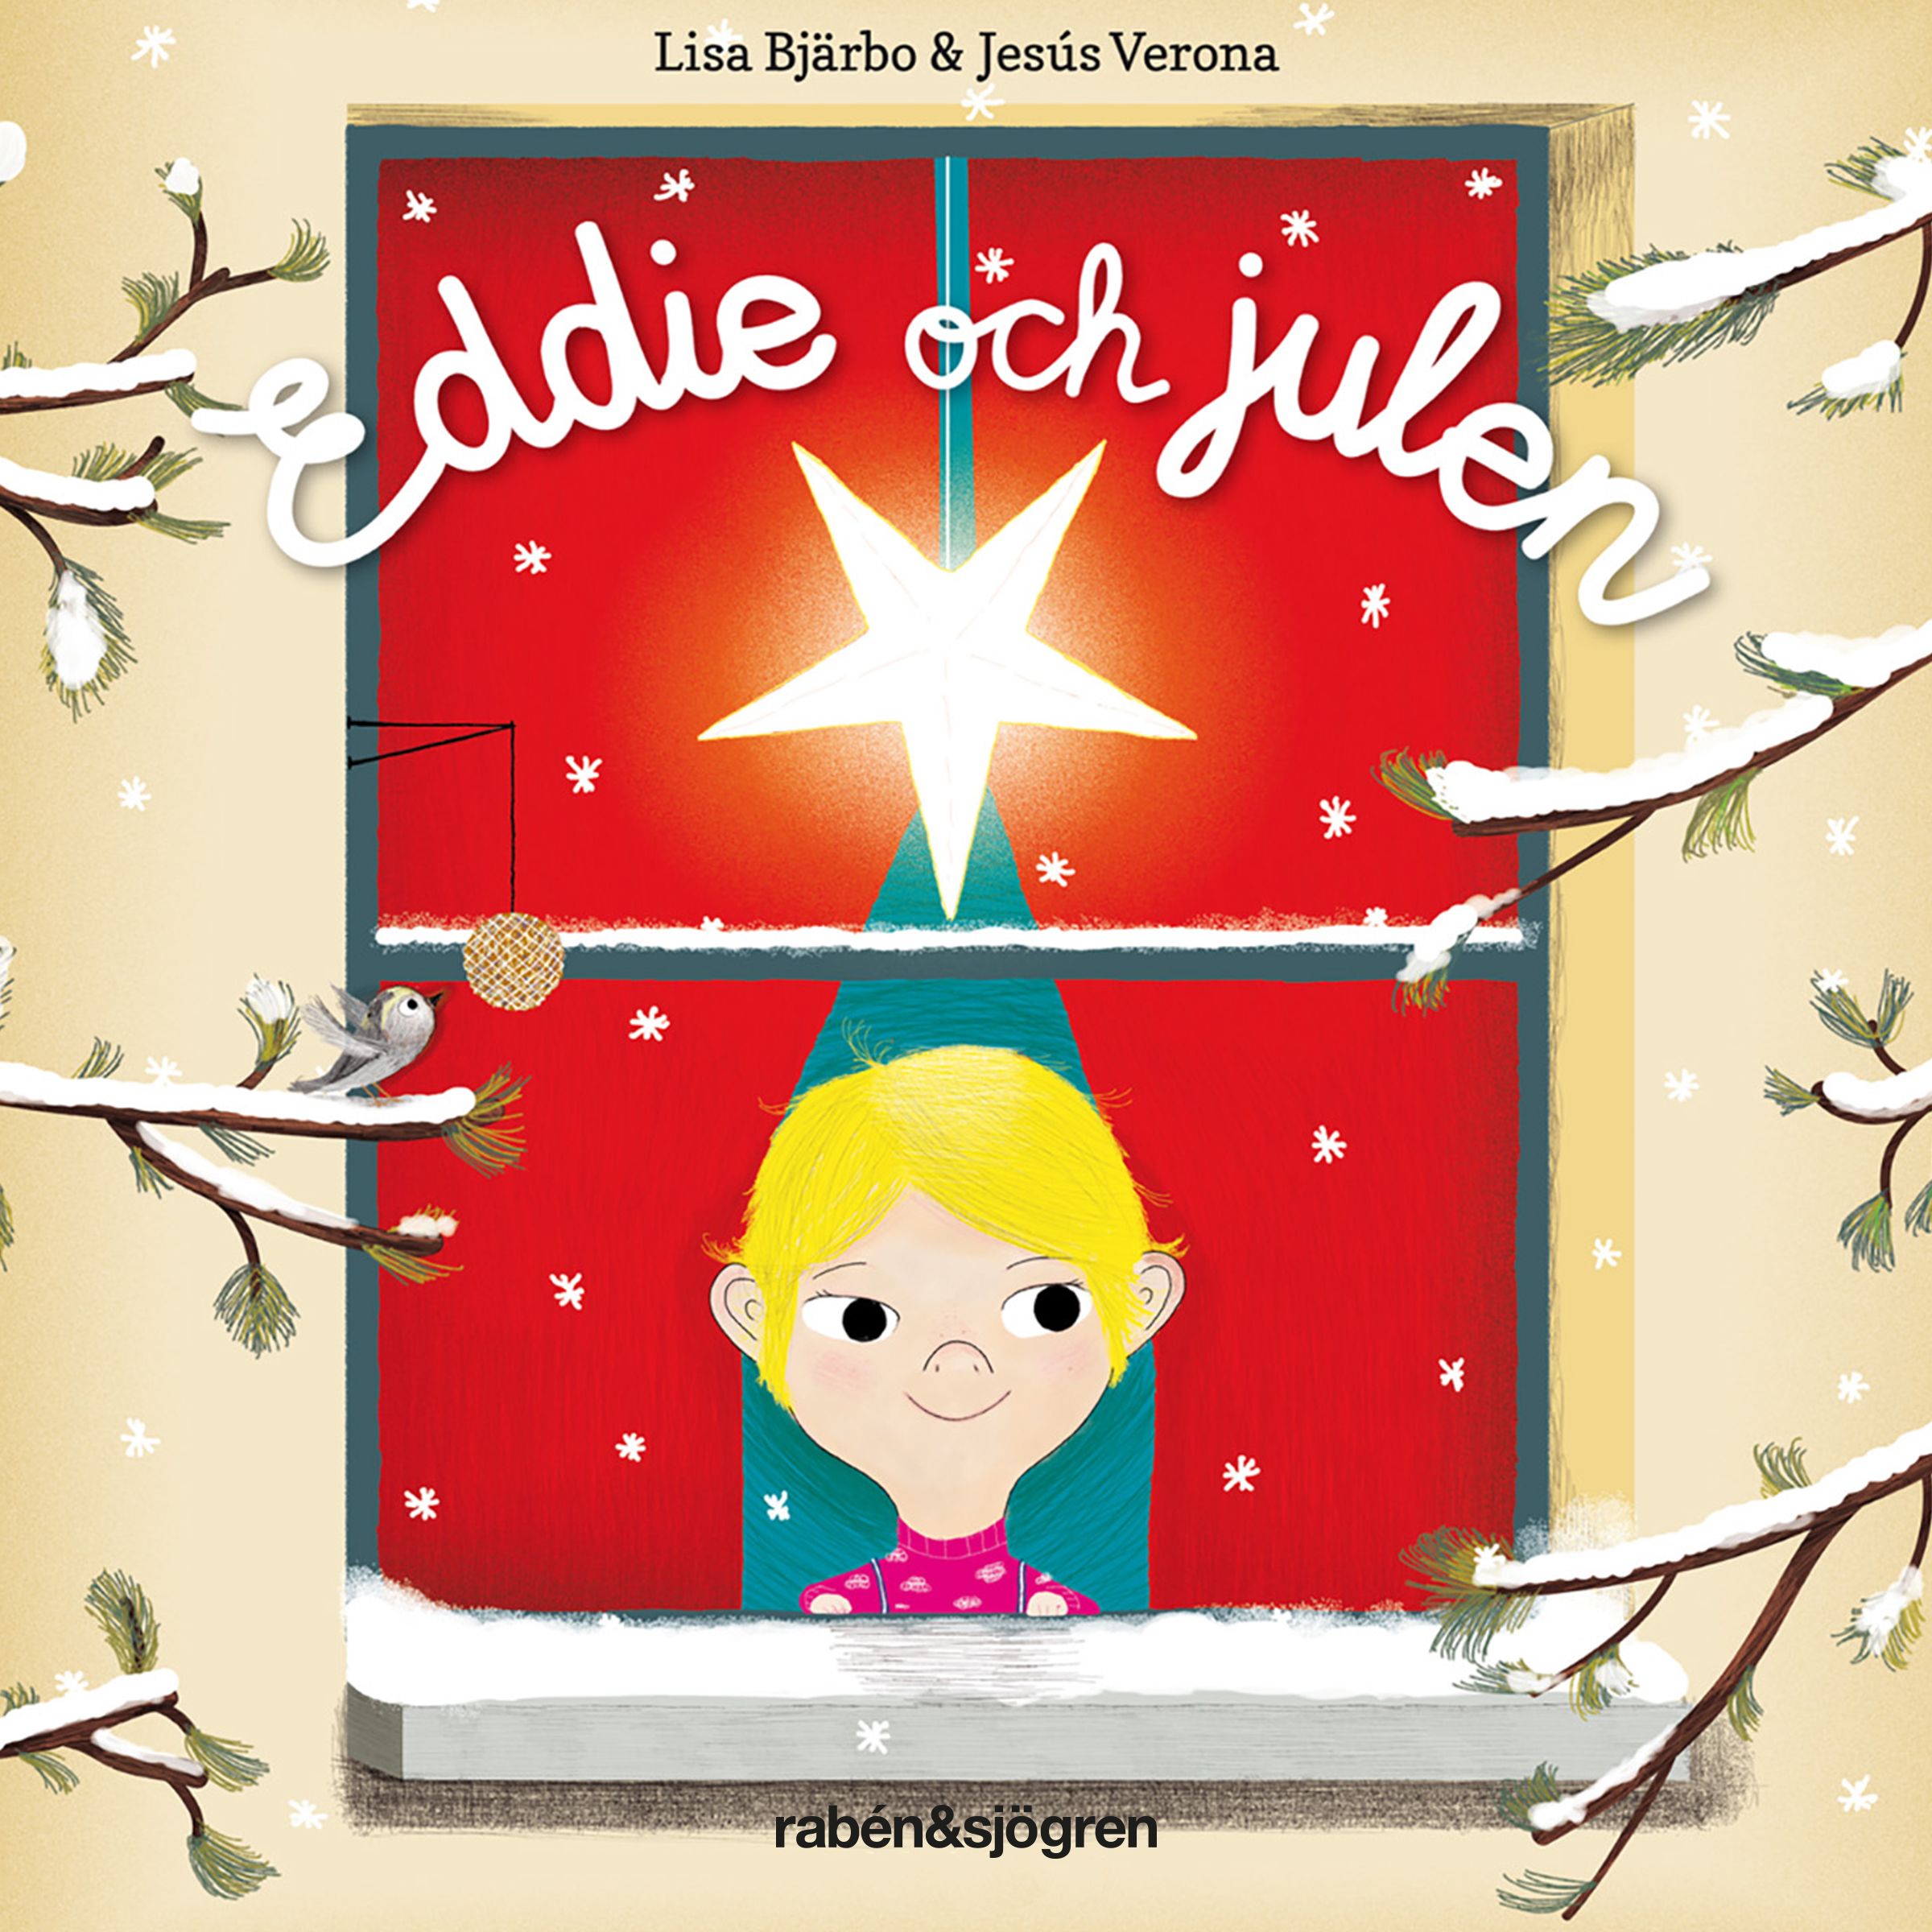 Eddie och julen, ljudbok av Lisa Bjärbo